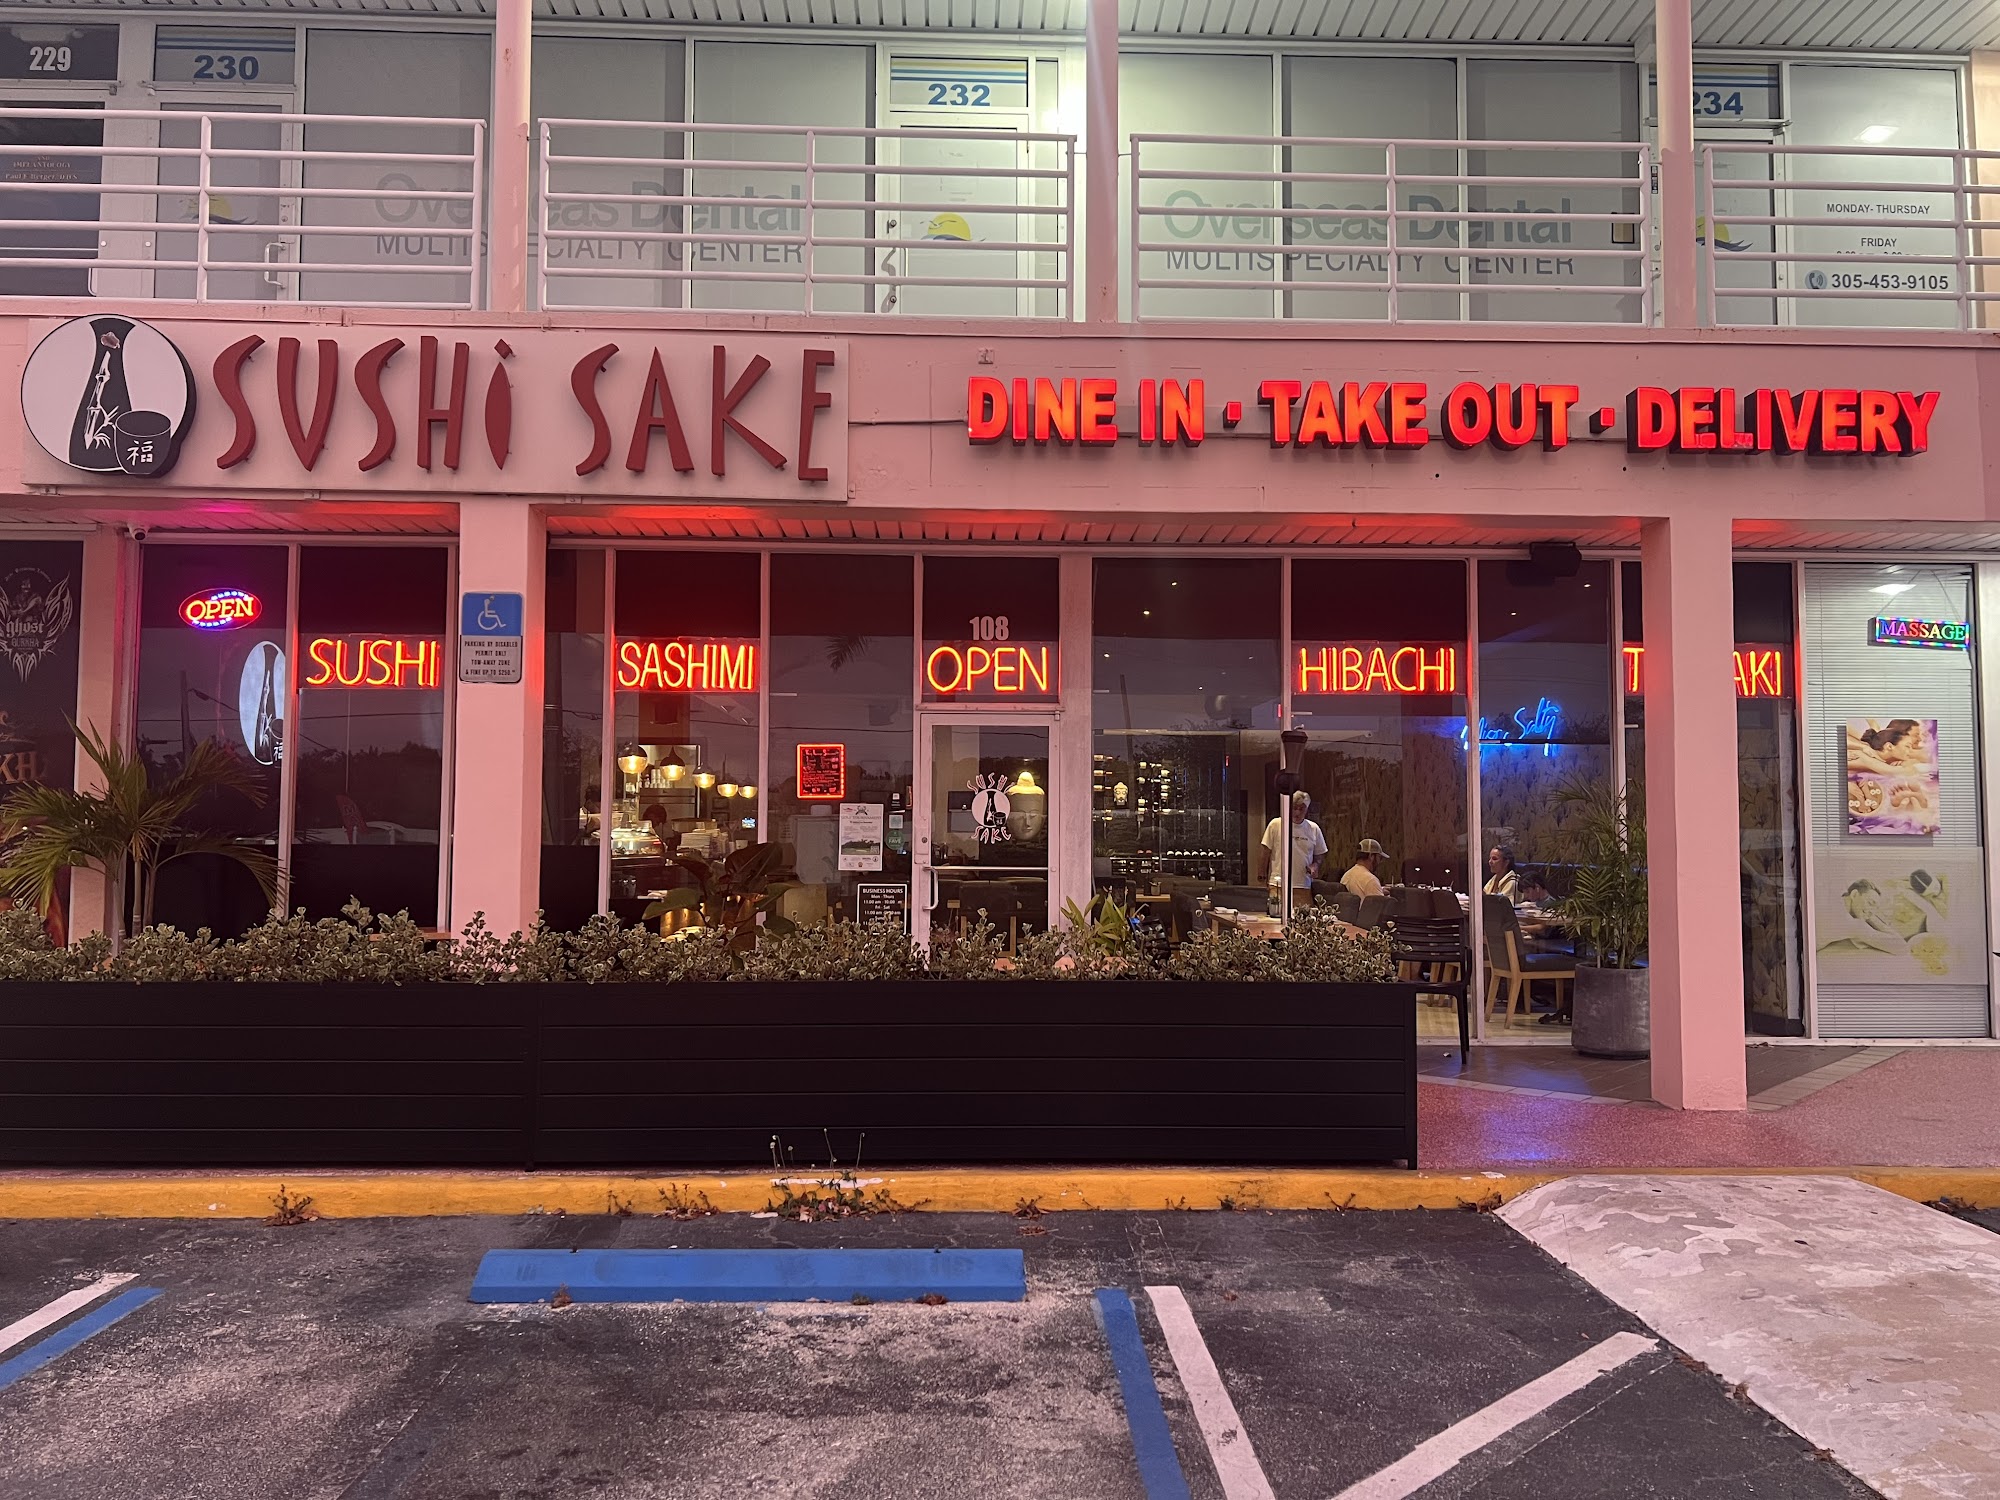 Sushi Sake Key Largo